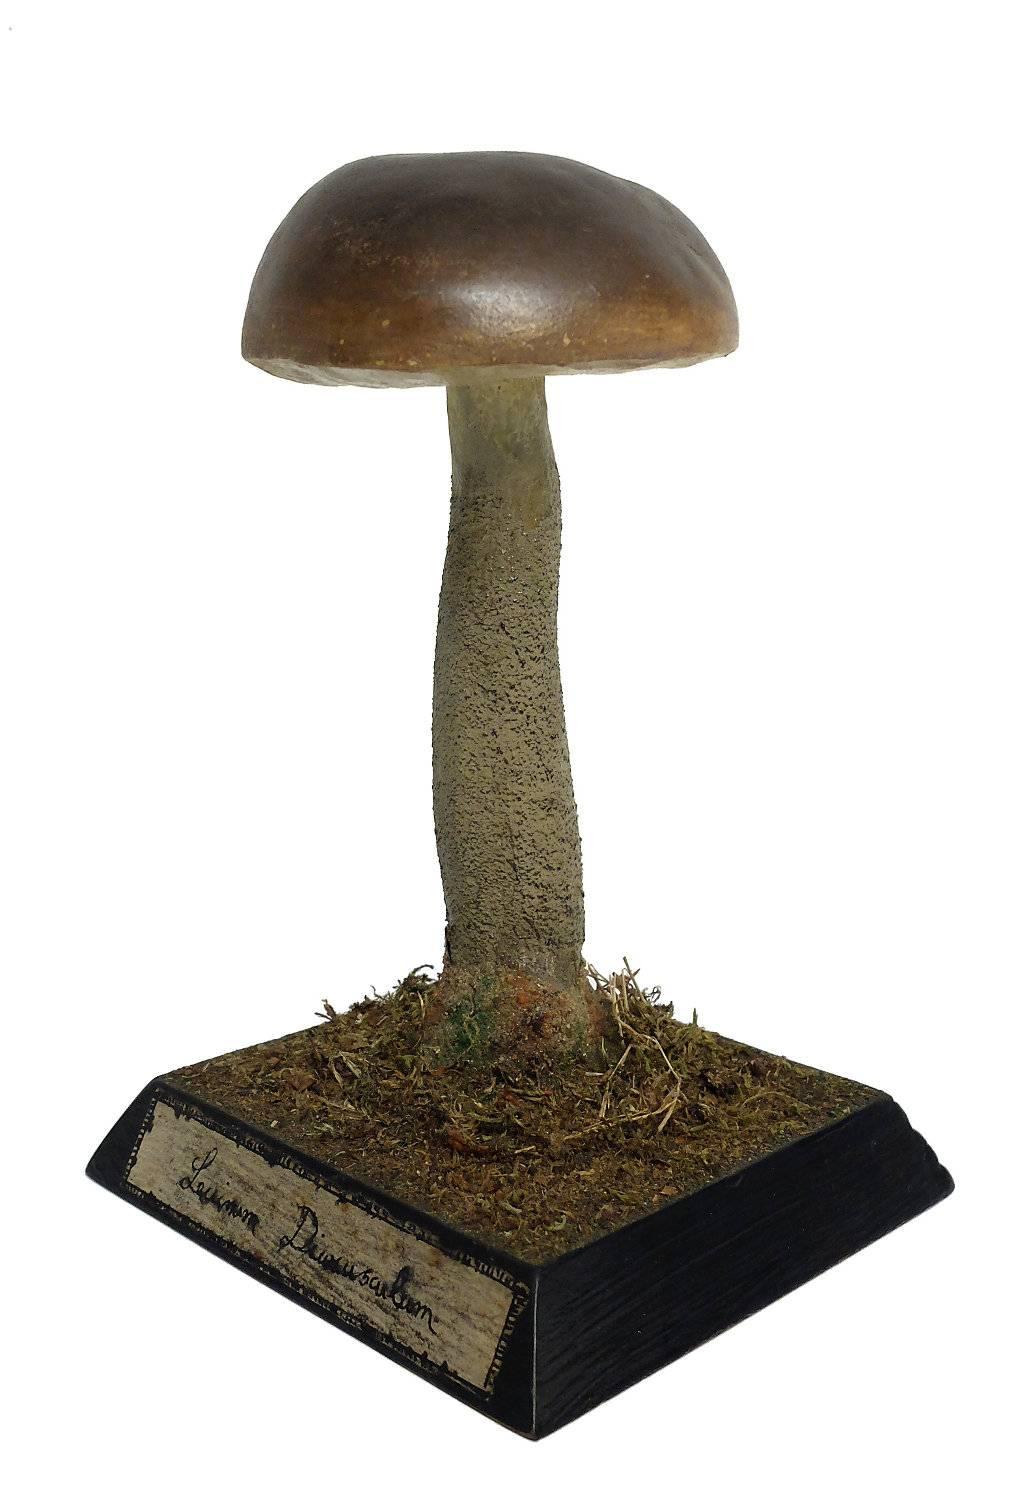 model of mushroom